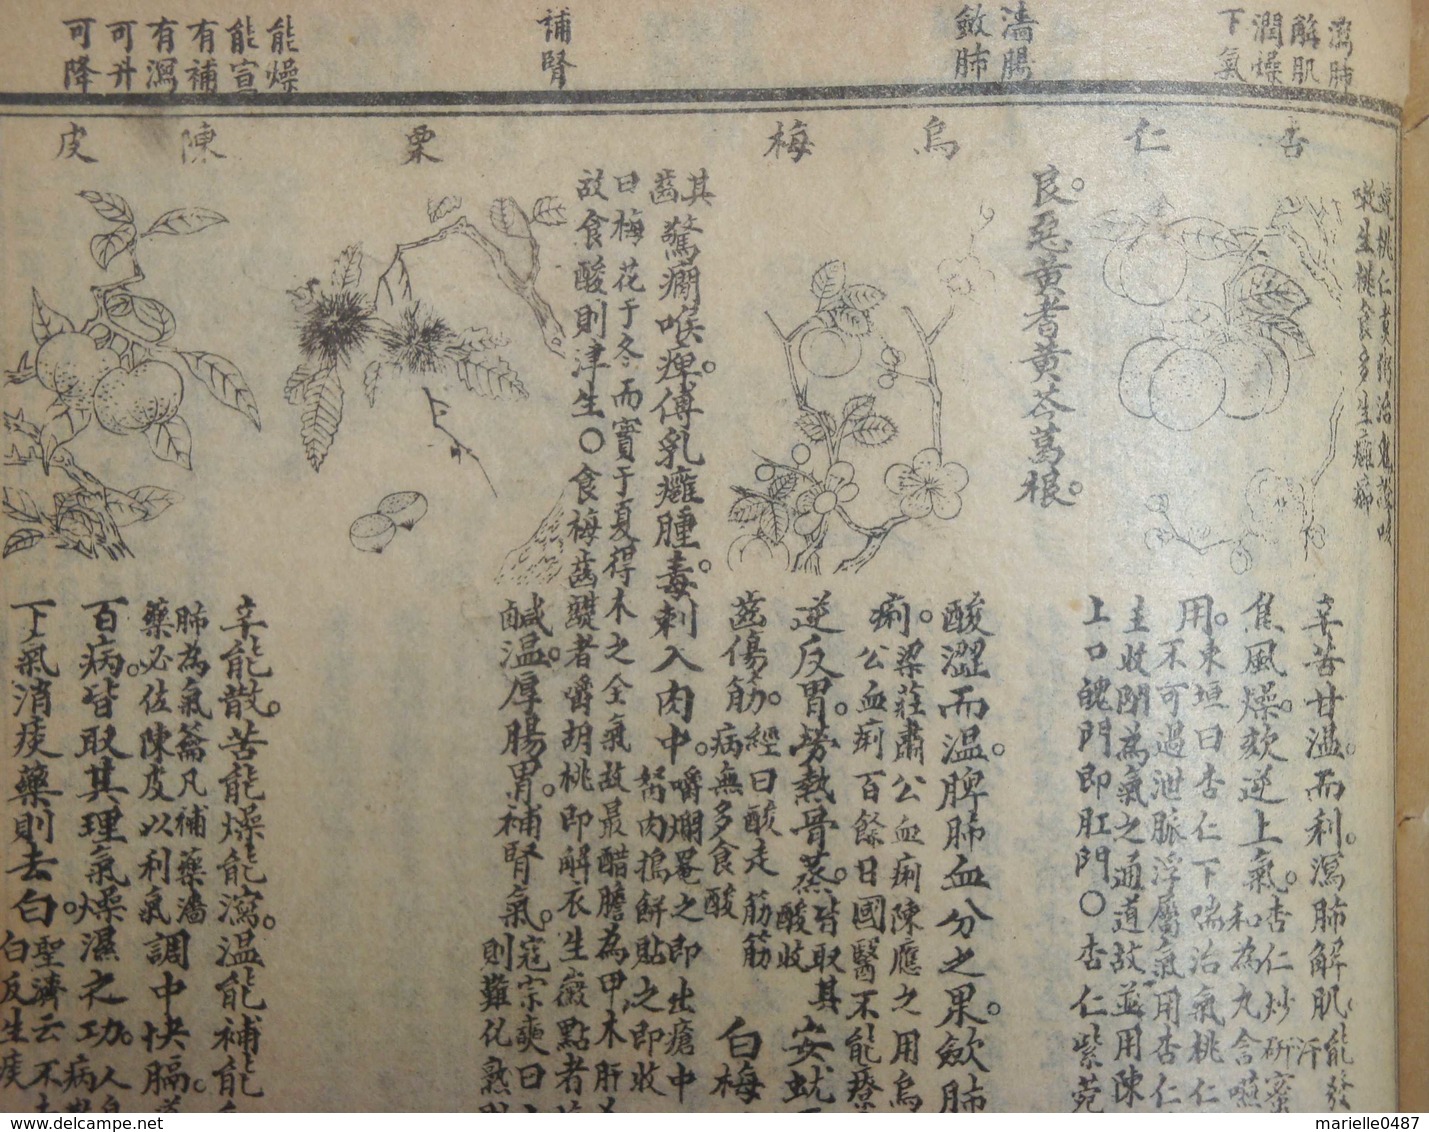 Ben cao gang mu - Recueil de médecine chinoise. 6 volumes